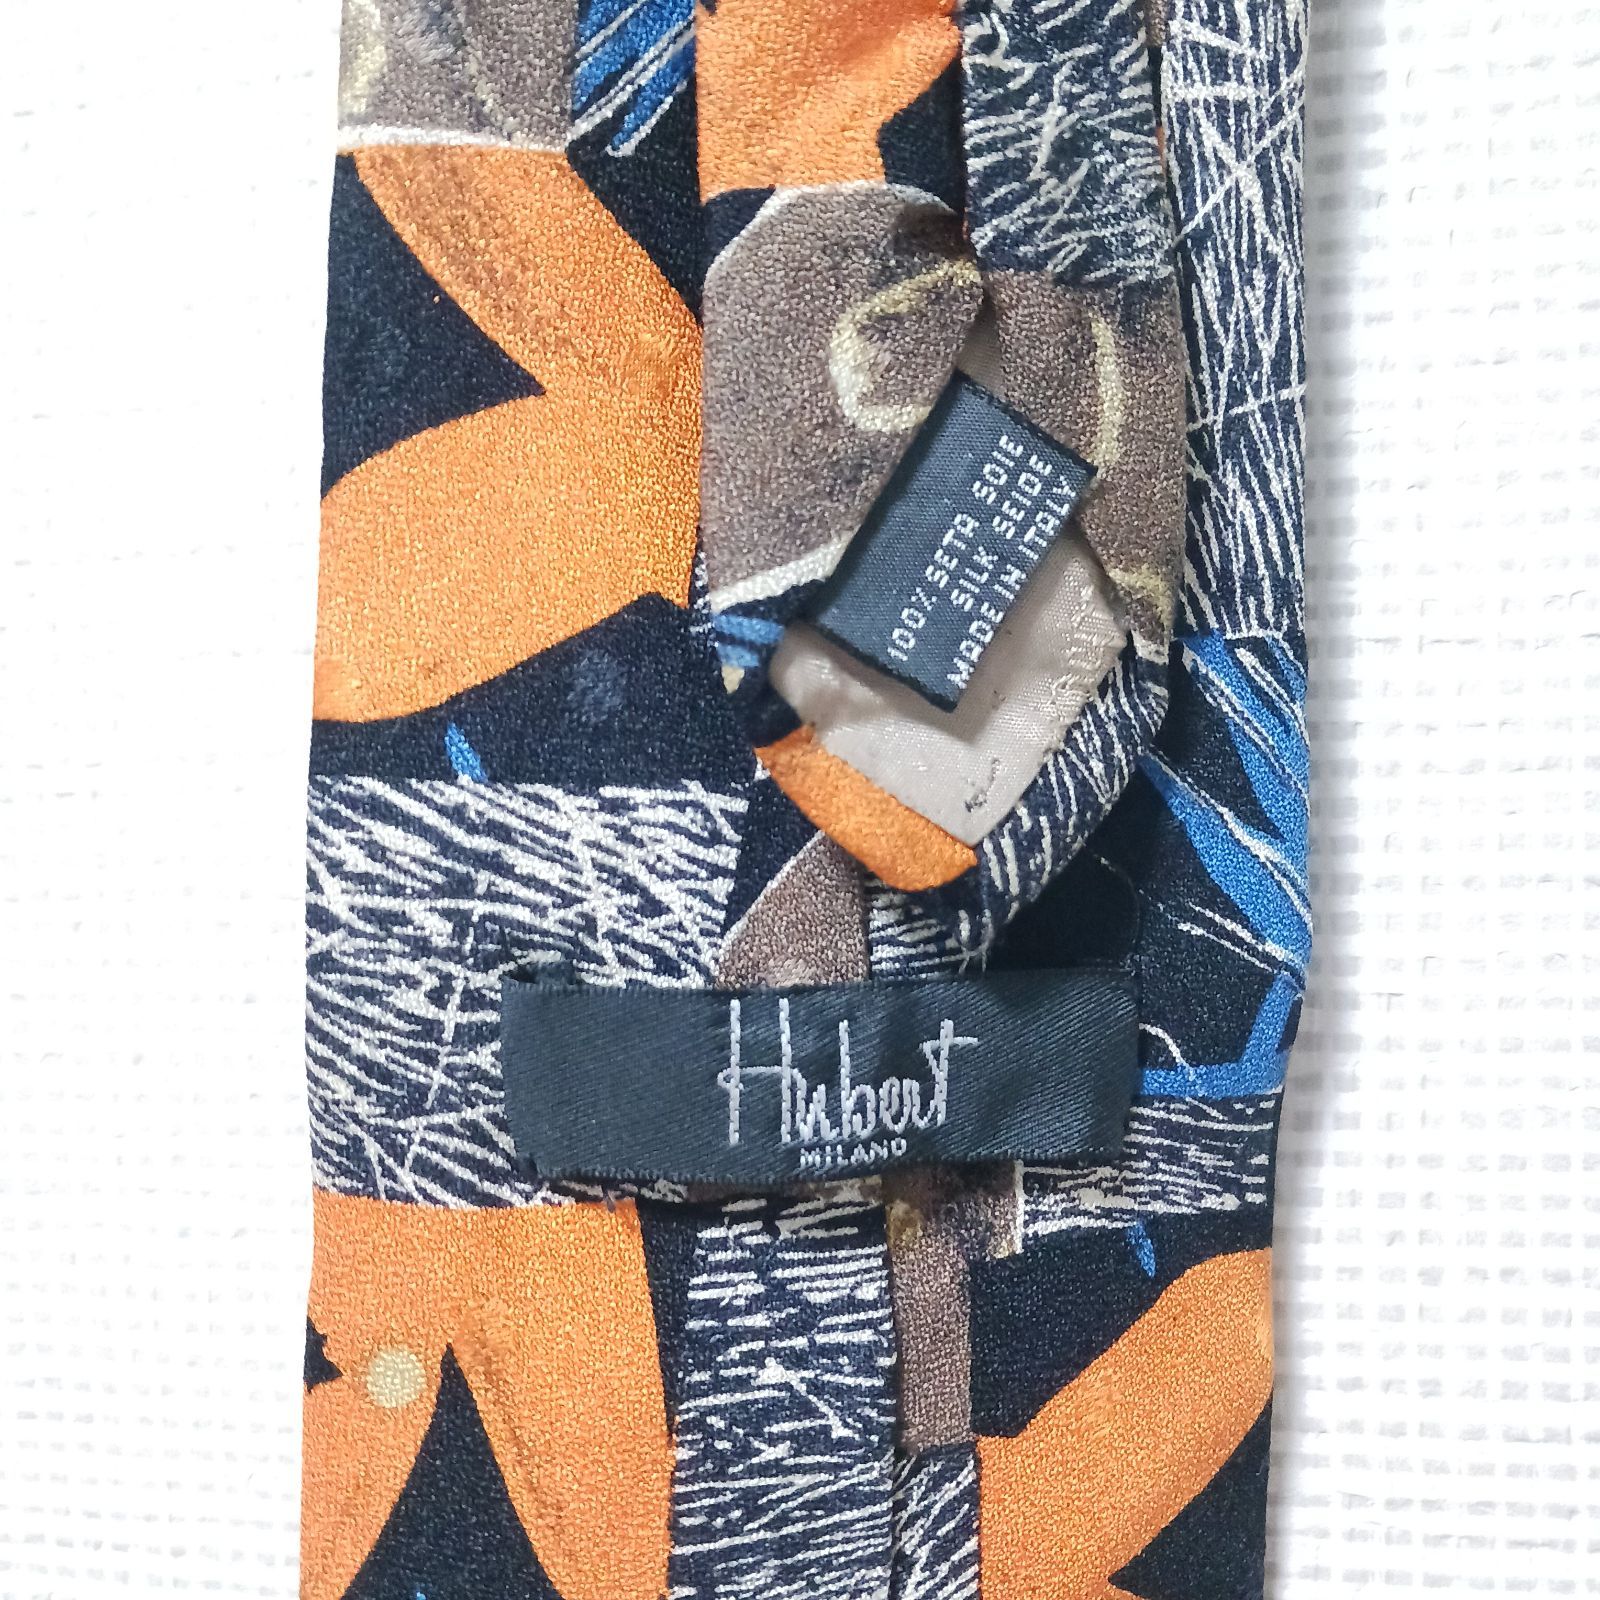 (^w^)b ウーベルト HUBERT 抽象画 アート ブルー系 マルチカラー 絹100% イタリア製 ネクタイ メンズ レディース ユニセックス  総柄 オシャレ かっこいい かわいい 70s80s90s ビンテージ レトロ 昭和